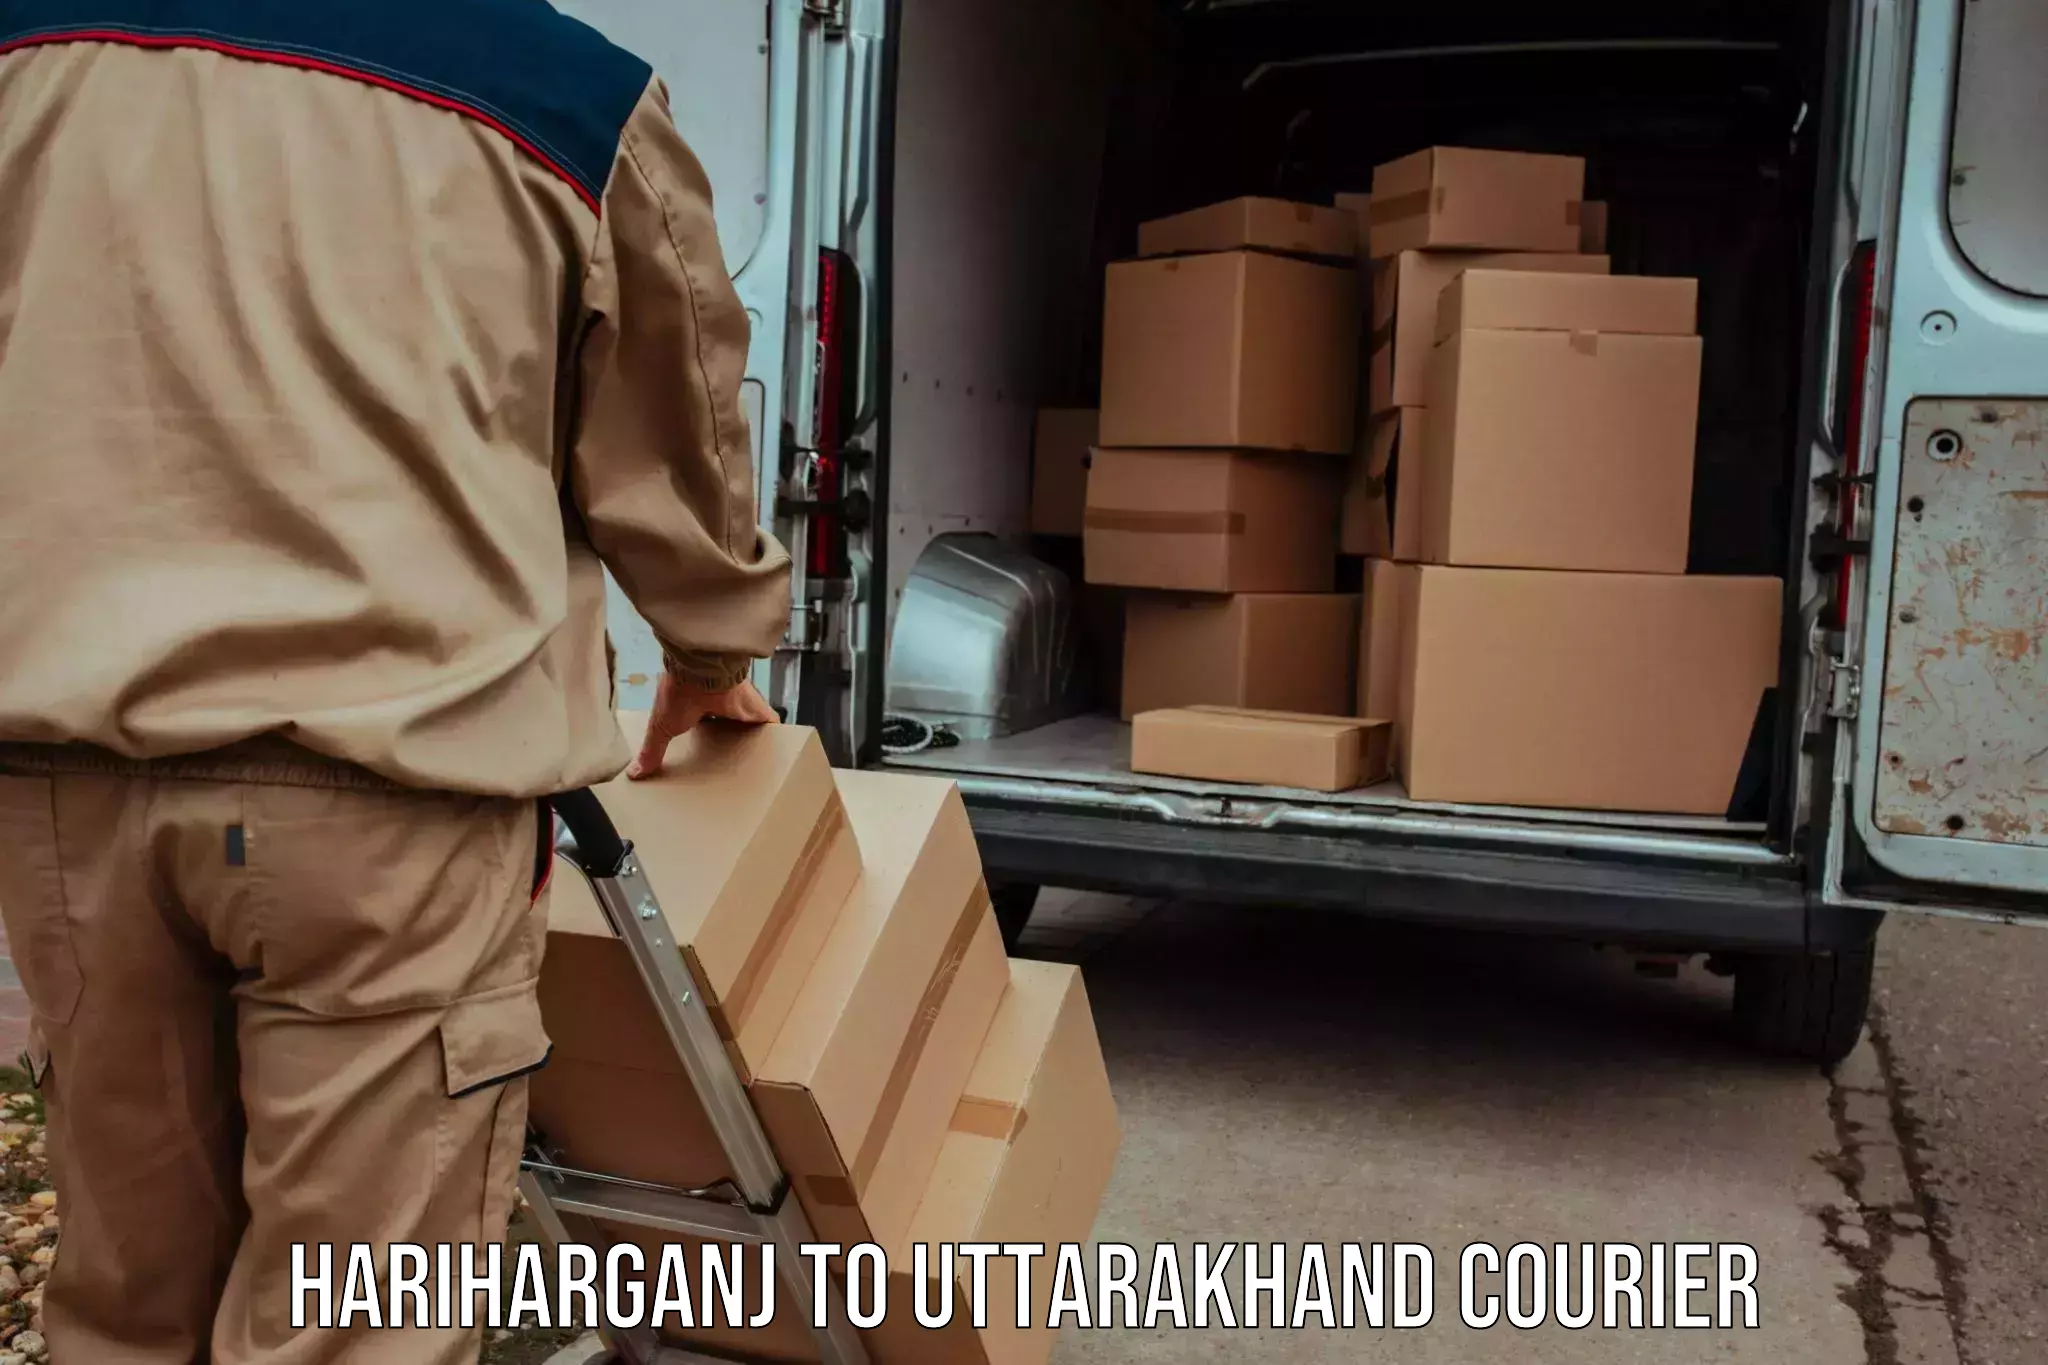 Courier app Hariharganj to Uttarakhand